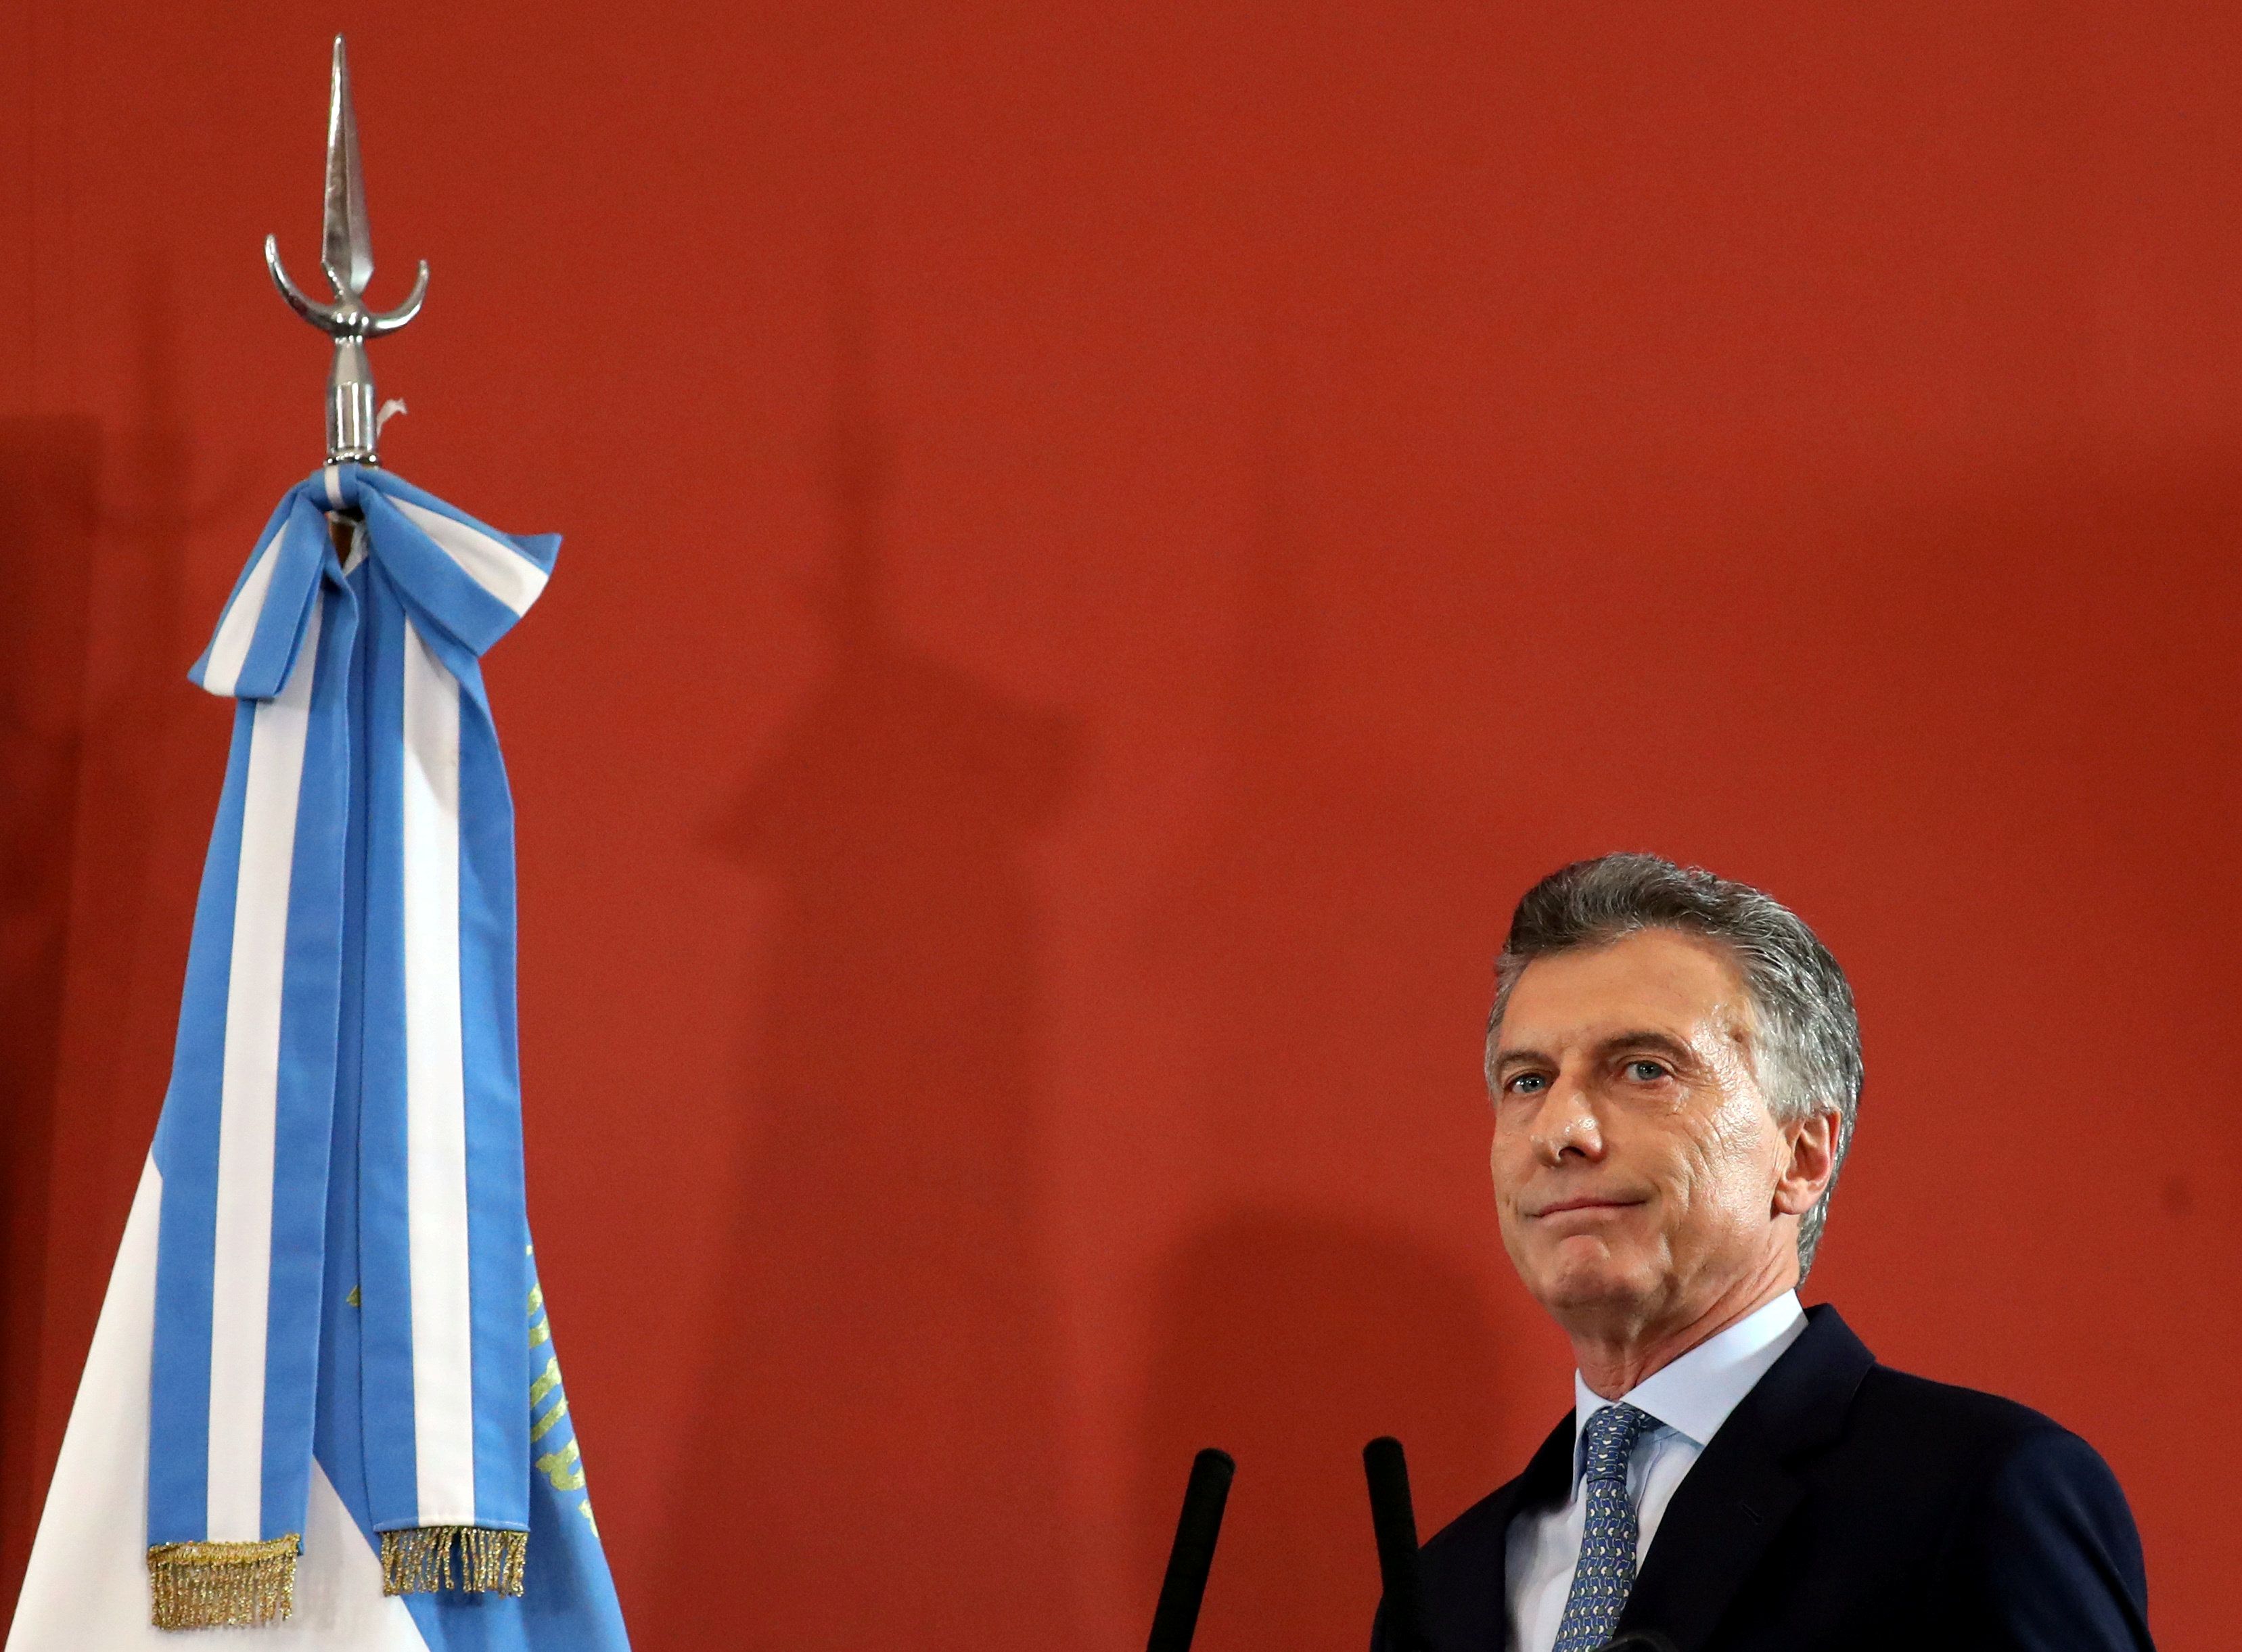 El FMI aprobó este viernes la ampliación del préstamo financiero al Gobierno argentino a 56.300 millones de dólares